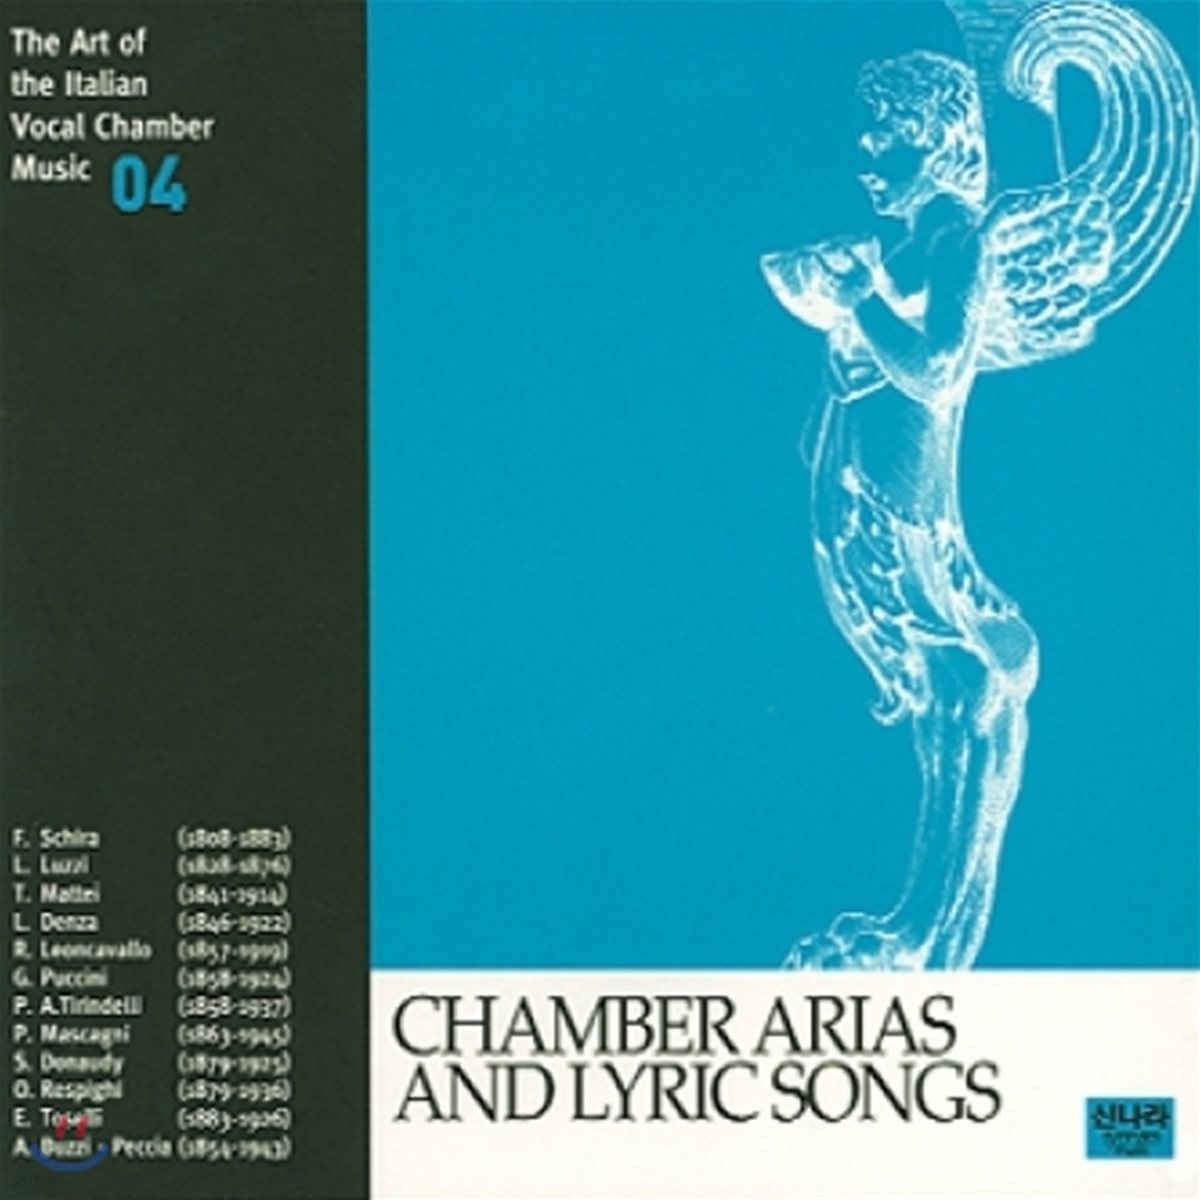 이태리 실내 성악 선집 4 - 실내 아리아와 서정가곡들 (The Art of the Italian Vocal Chamber Music 4 - Chamber Arias and Lyric Songs)